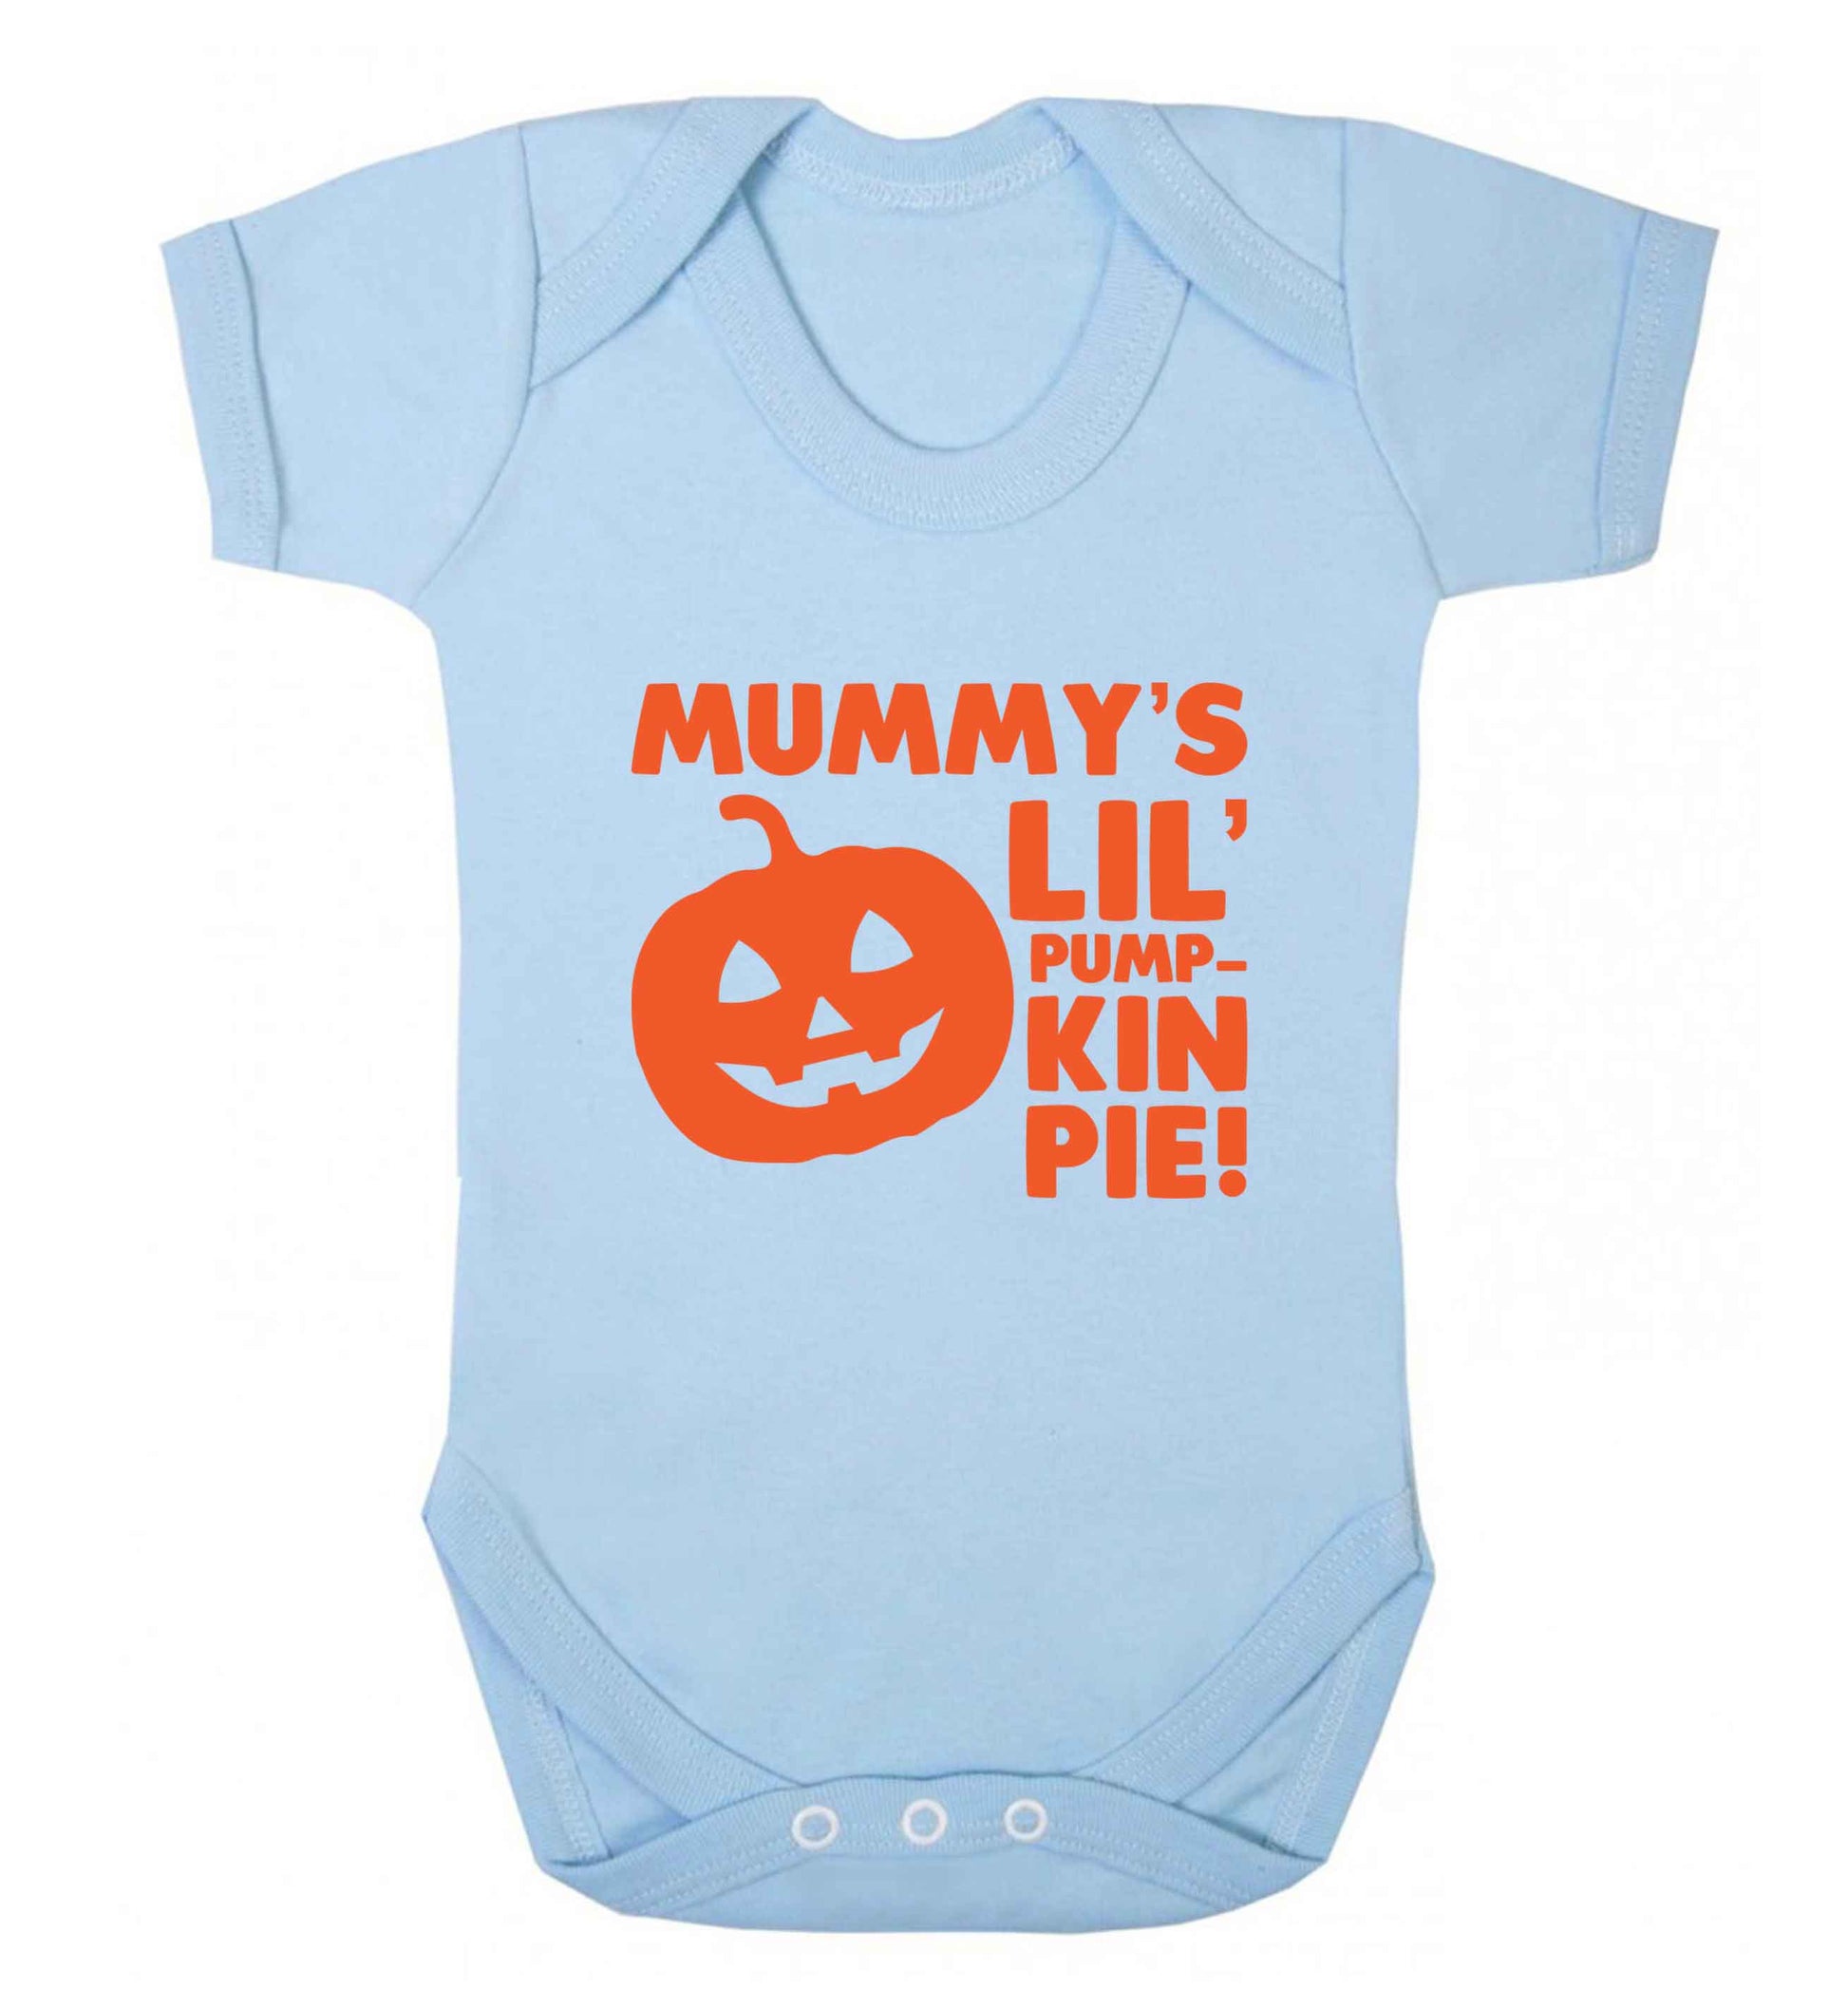 Mummy's lil' pumpkin pie baby vest pale blue 18-24 months